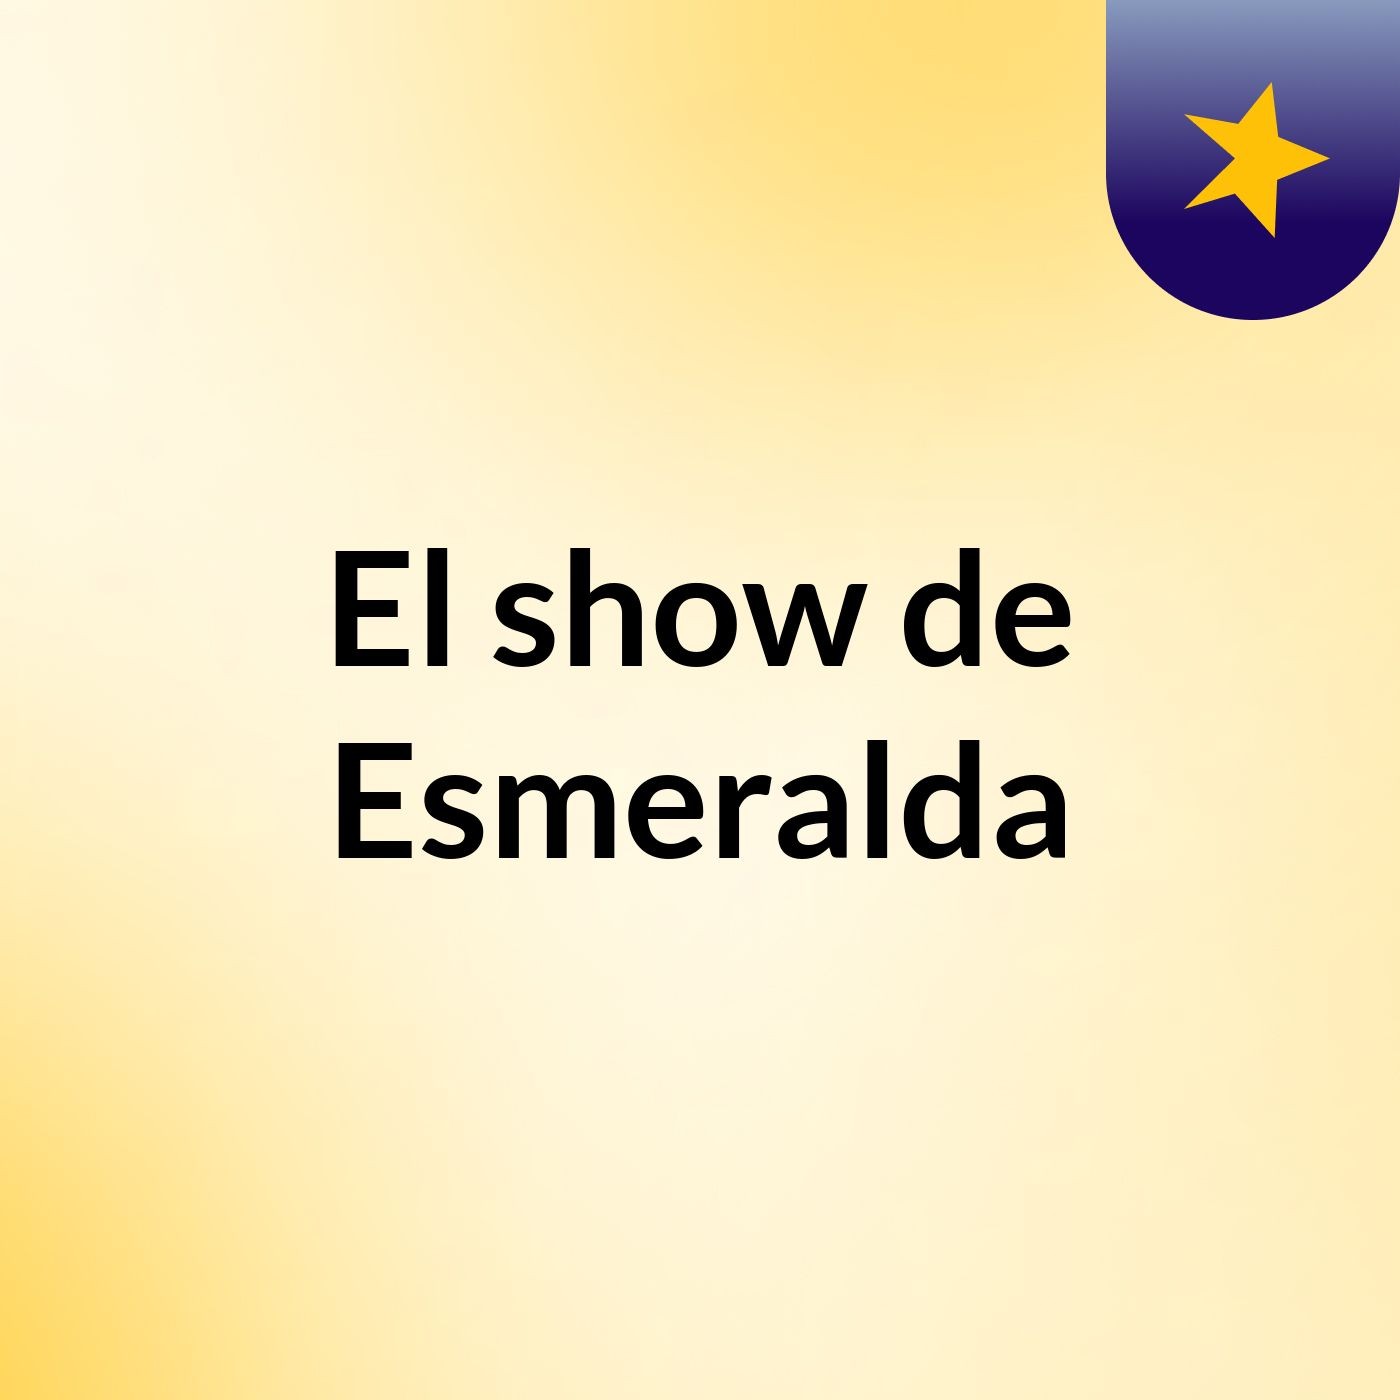 Episodio 3 - El show de Esmeralda